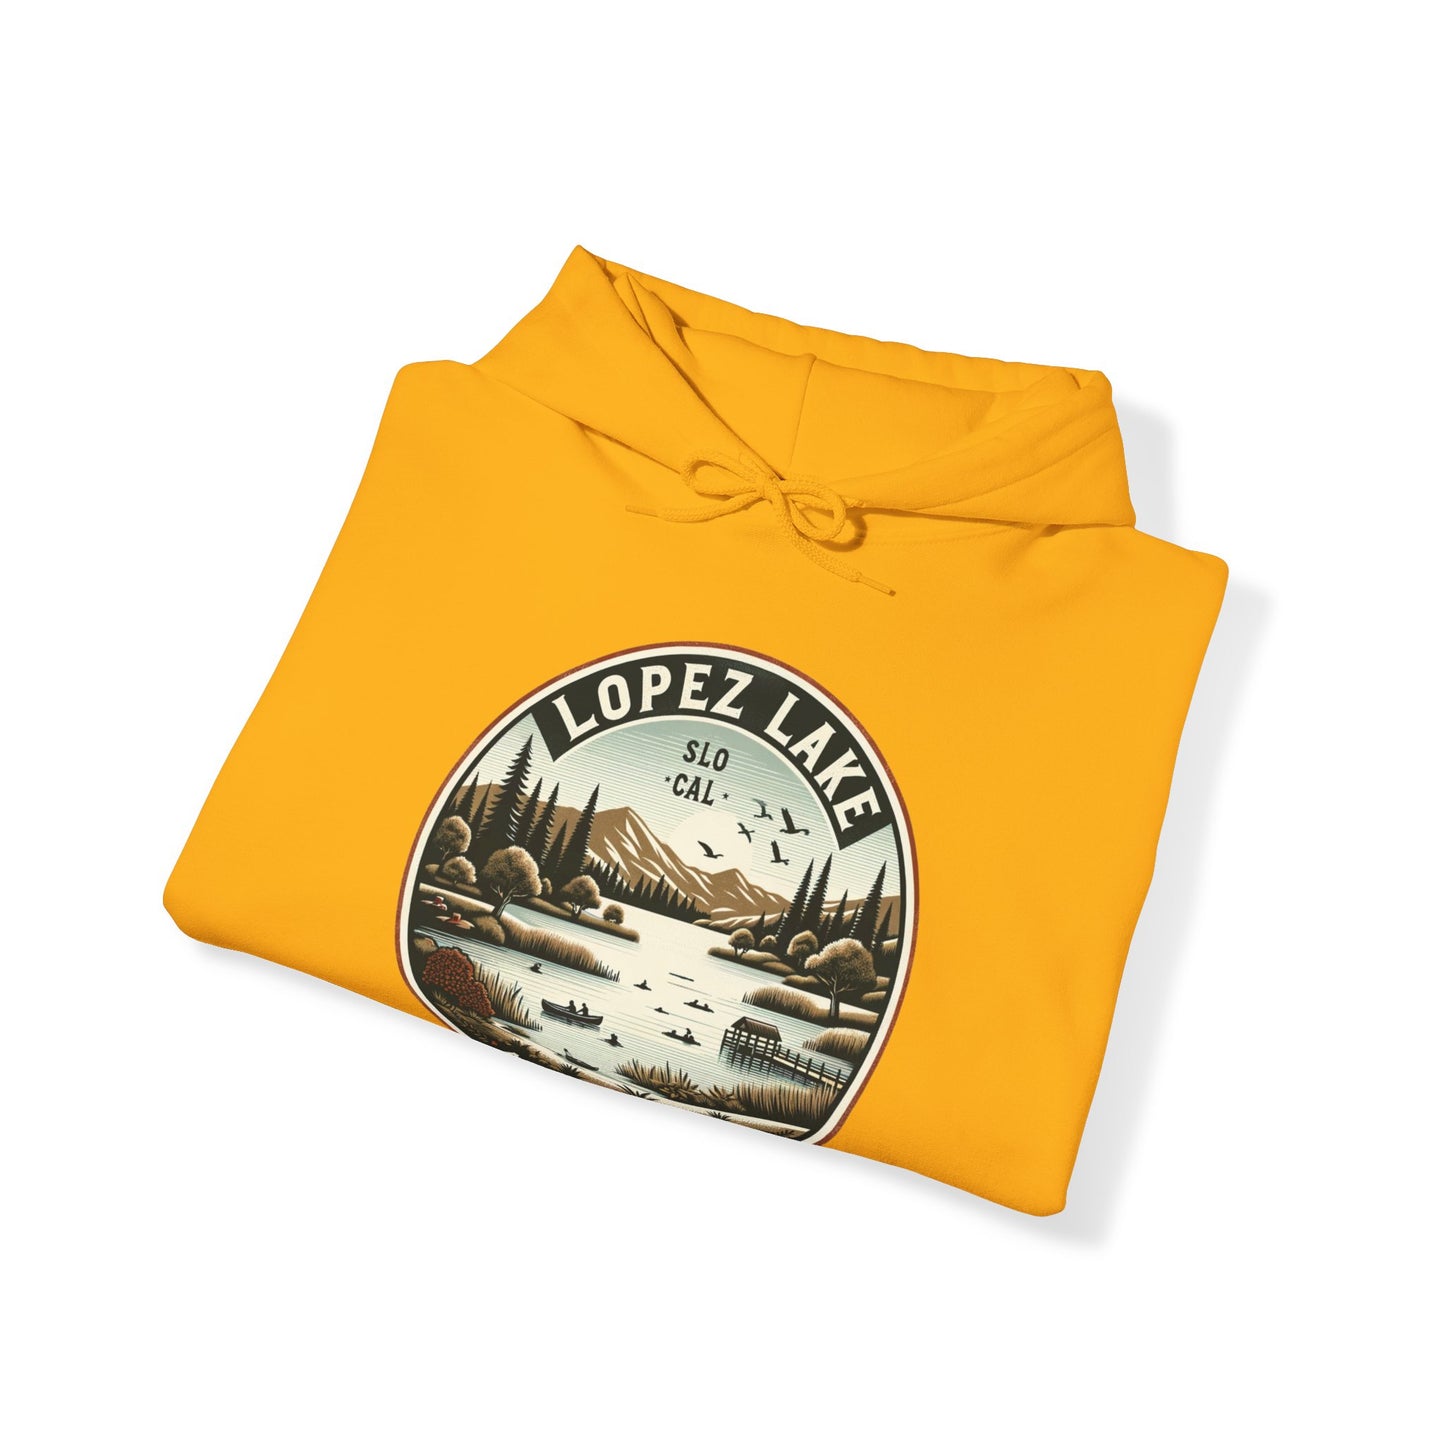 Arroyo Grande Lopez Lake Vintage Tee - SLO CAL Inspired Unisex Heavy Blend™ Hooded Sweatshirt